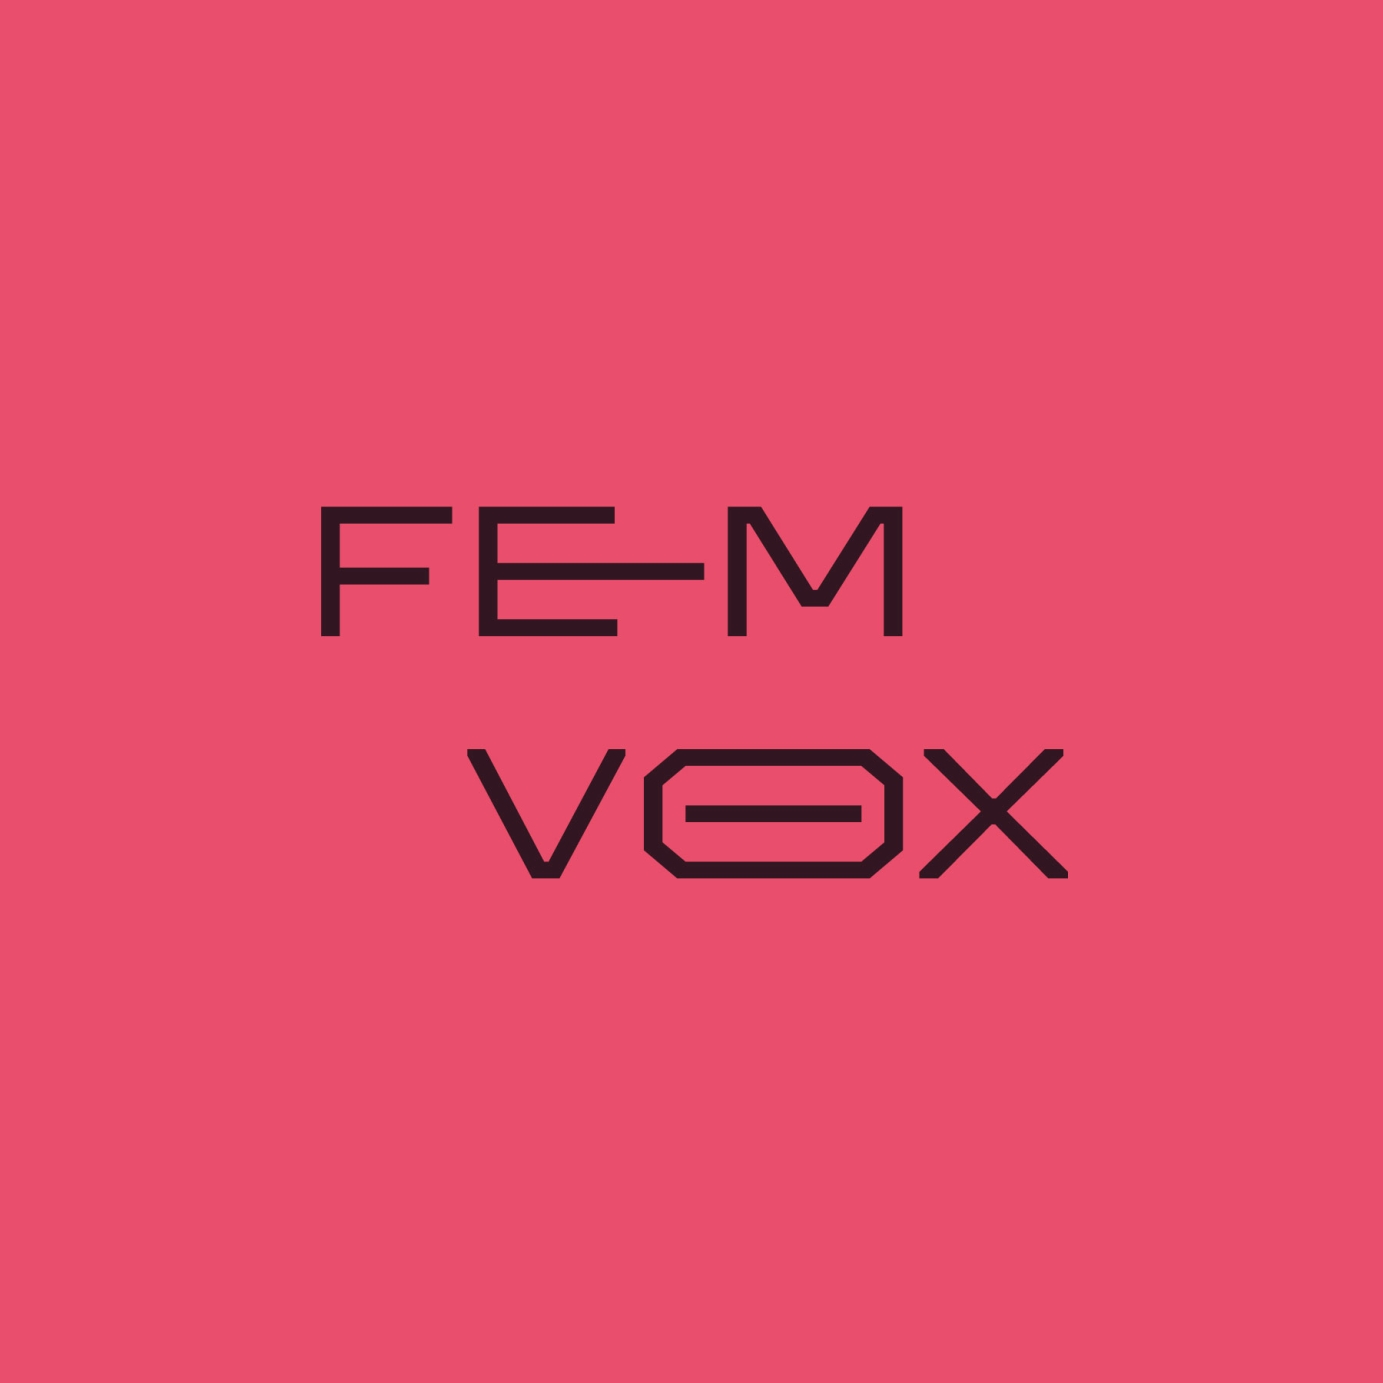 Fem Vox